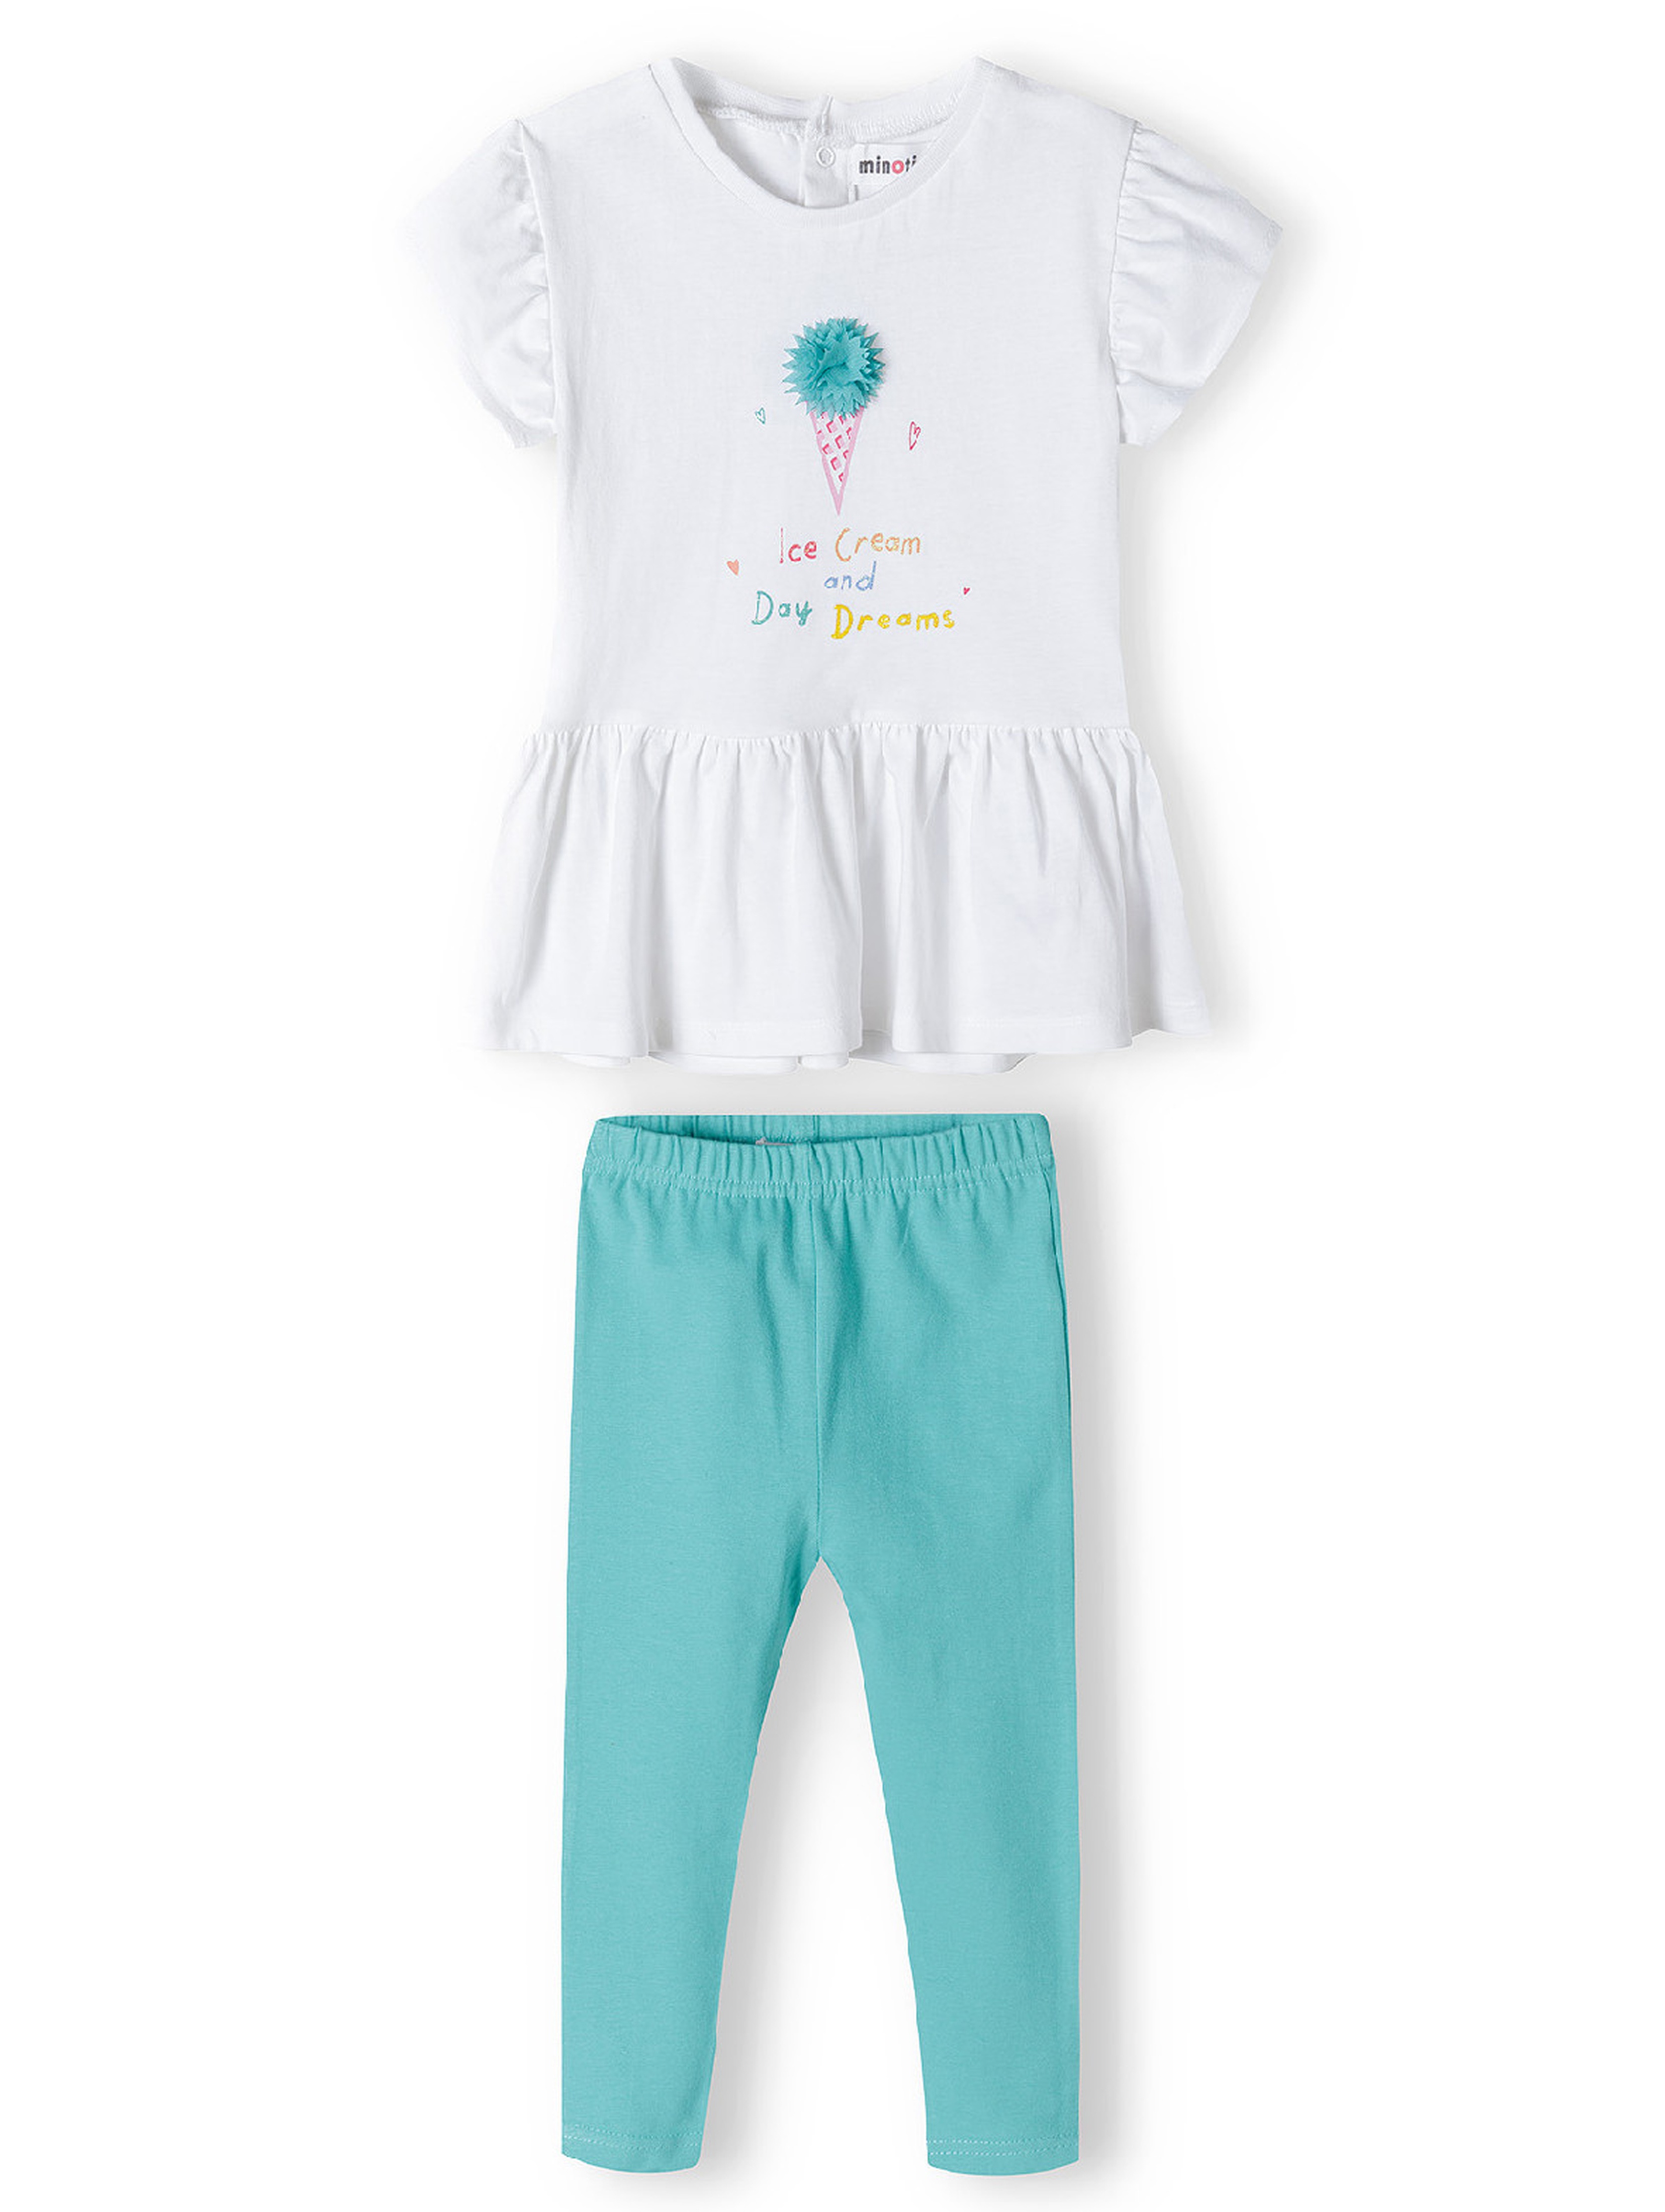 Komplet dla niemowlaka- biała bluzka + niebieskie legginsy